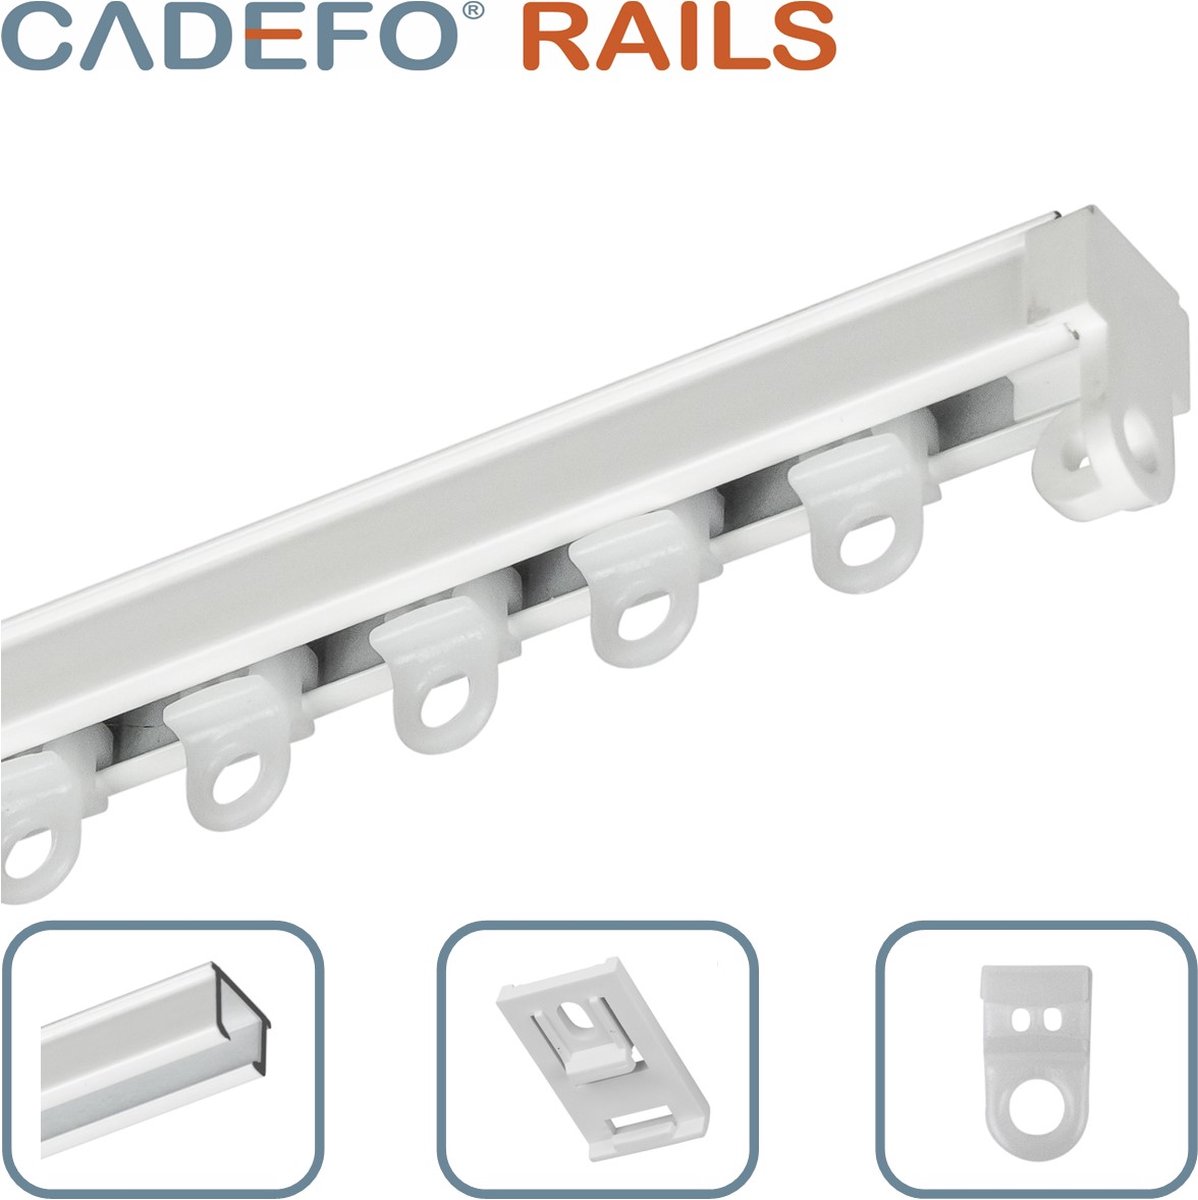 CADEFO RAILS (451 - 500 cm) Gordijnrails - Compleet op maat! - UIT 1 STUK - Leverbaar tot 6 meter - Plafondbevestiging - Lengte 469 cm